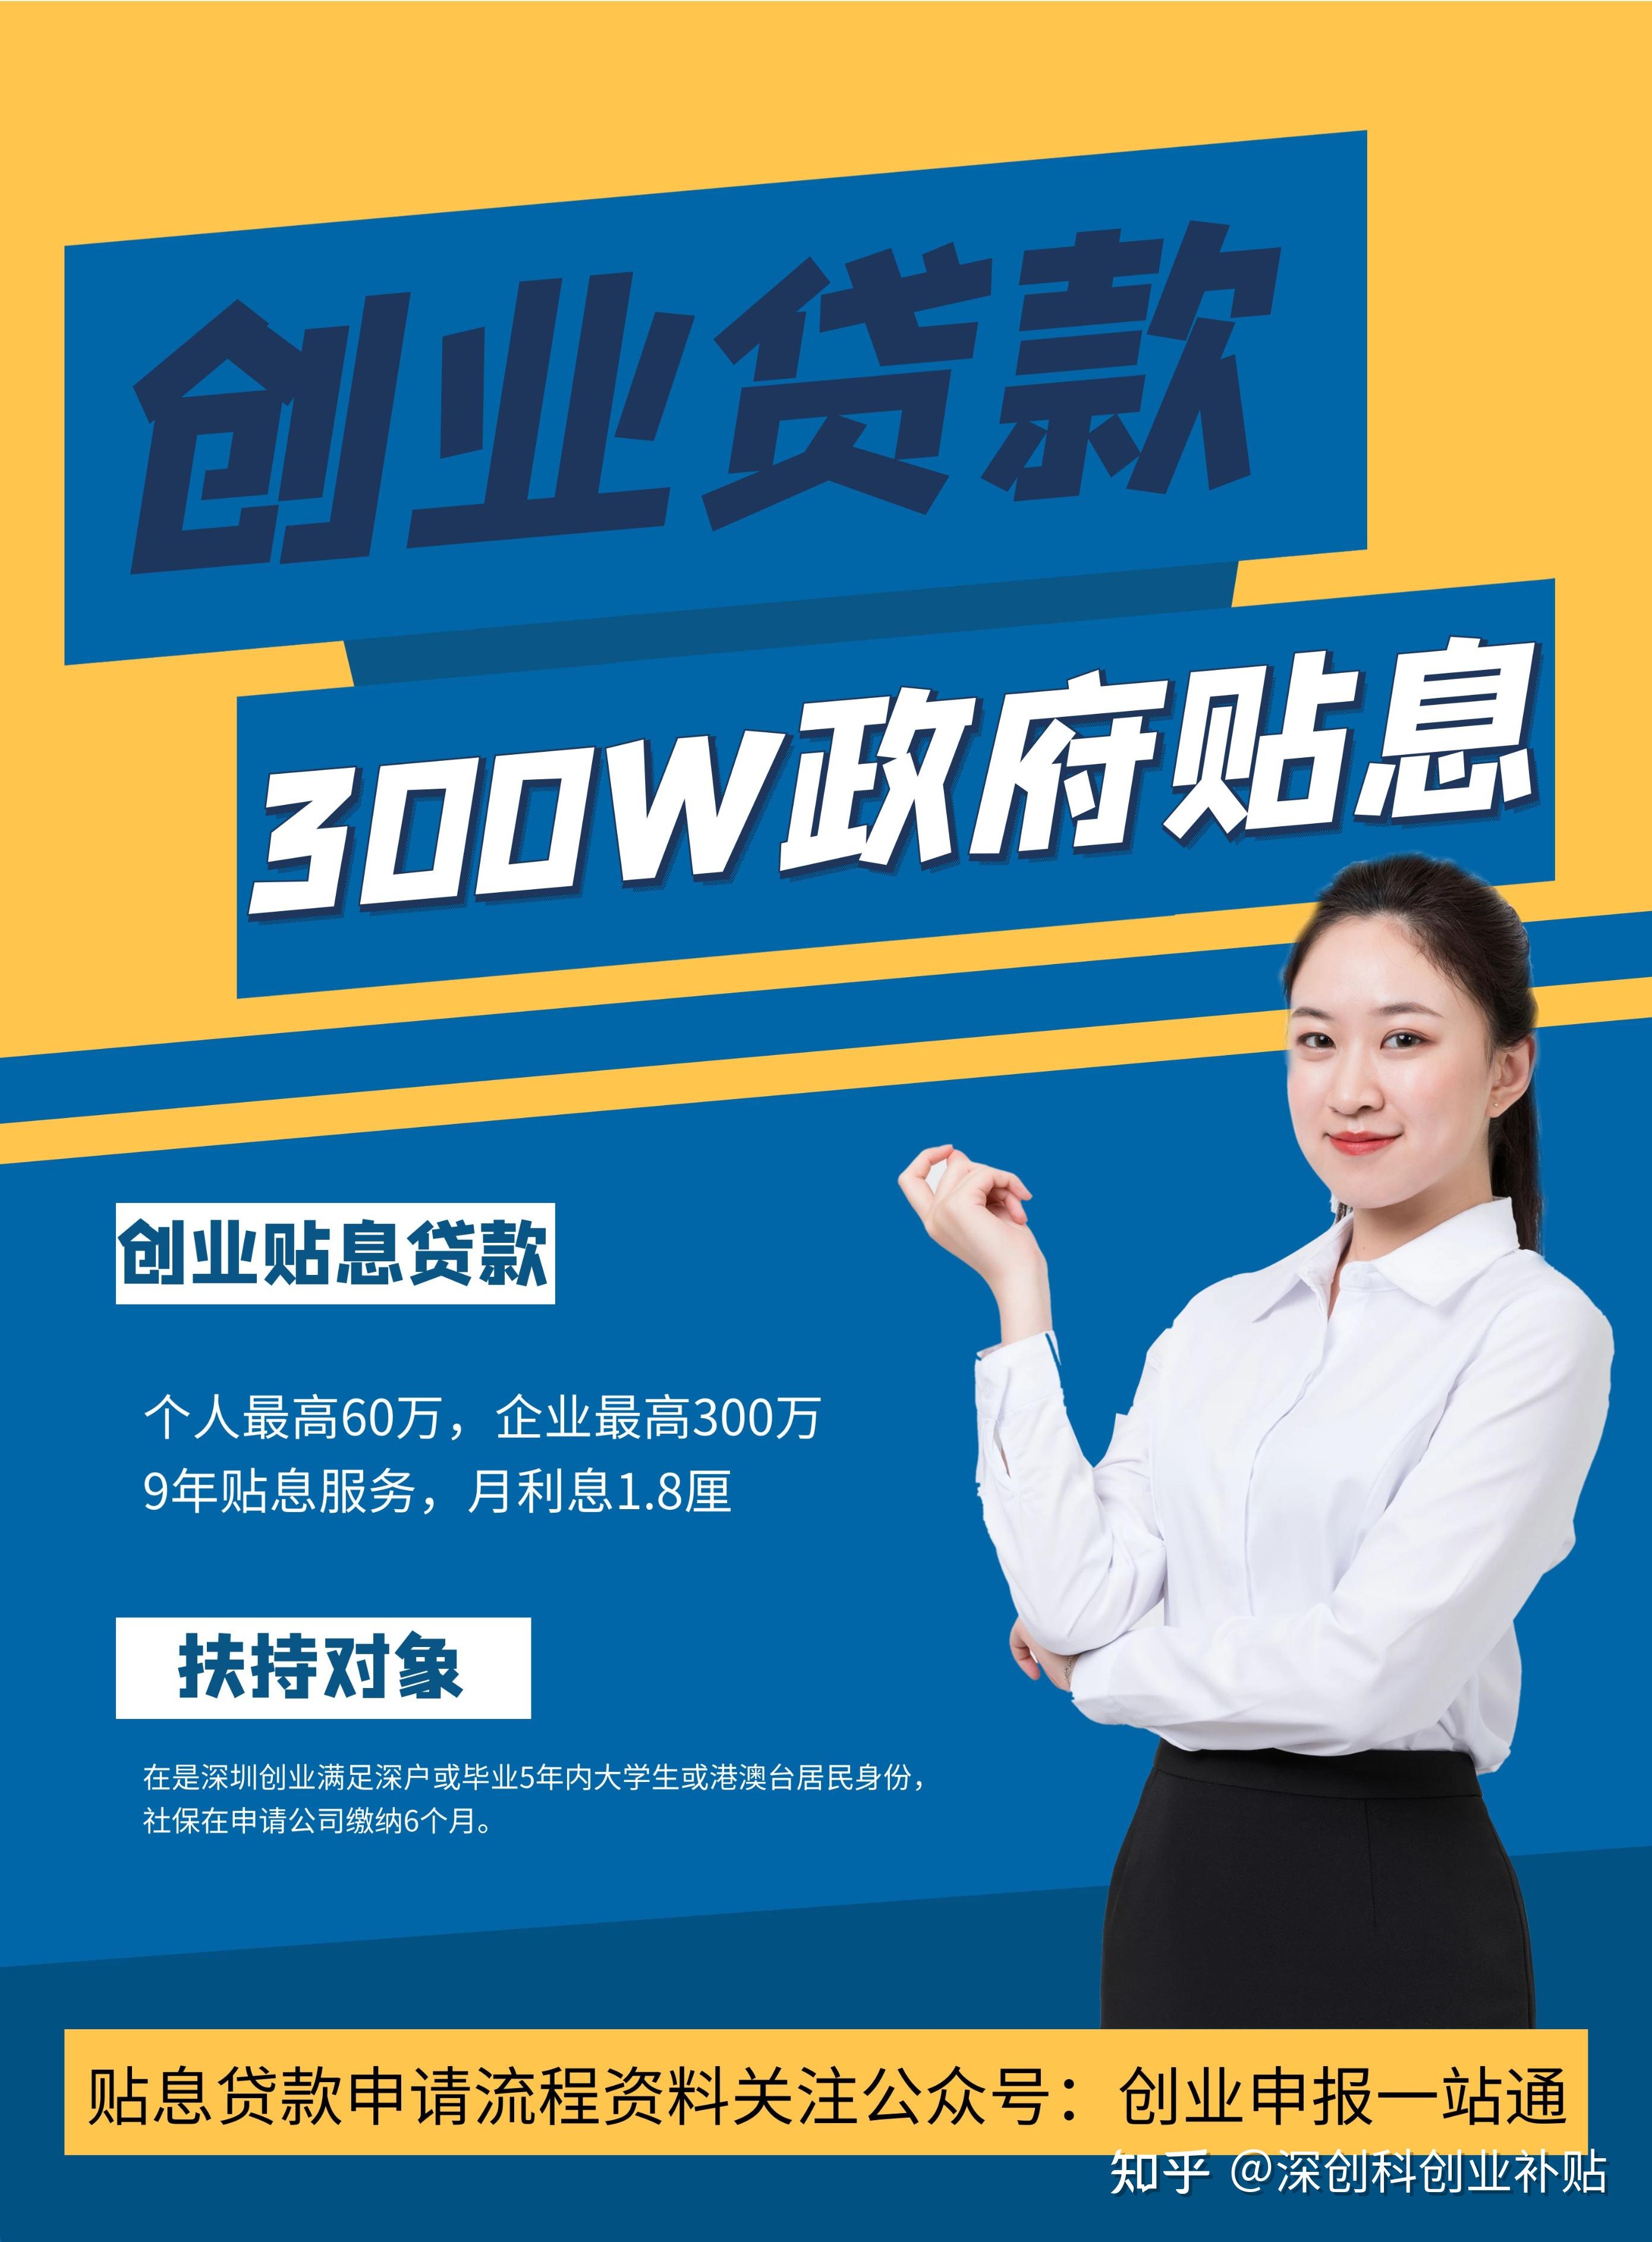 深圳创业扶持贷款,60万月利息只要1075元,免担保抵押 